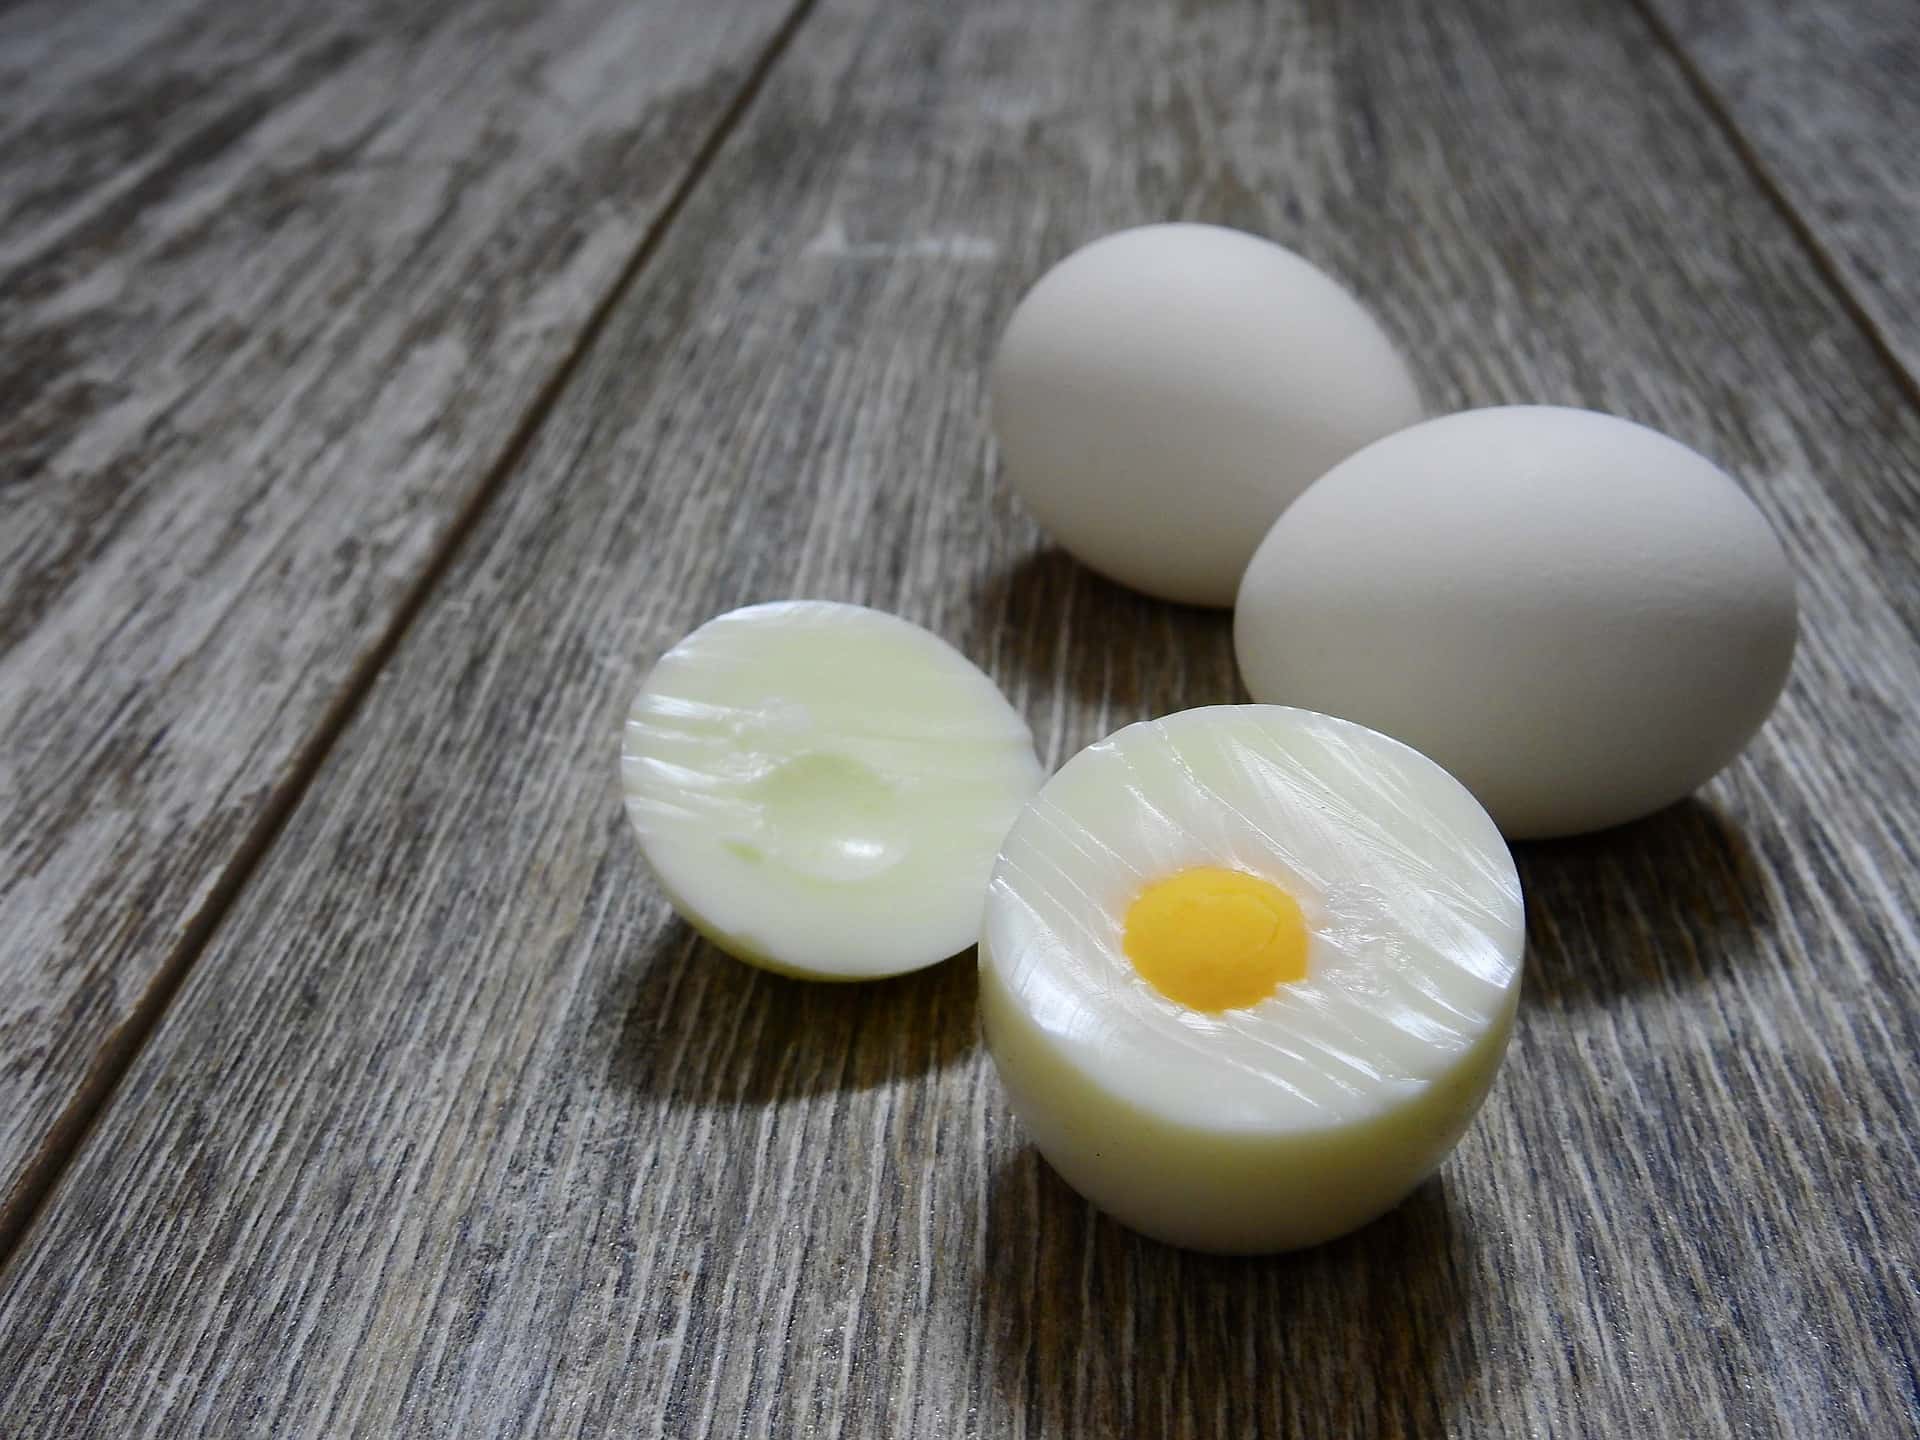 Tahukah Kamu Manfaat Telur Rebus Bagi Kesehatan? Salah Satunya Bisa Menurunkan Berat Badan Lho